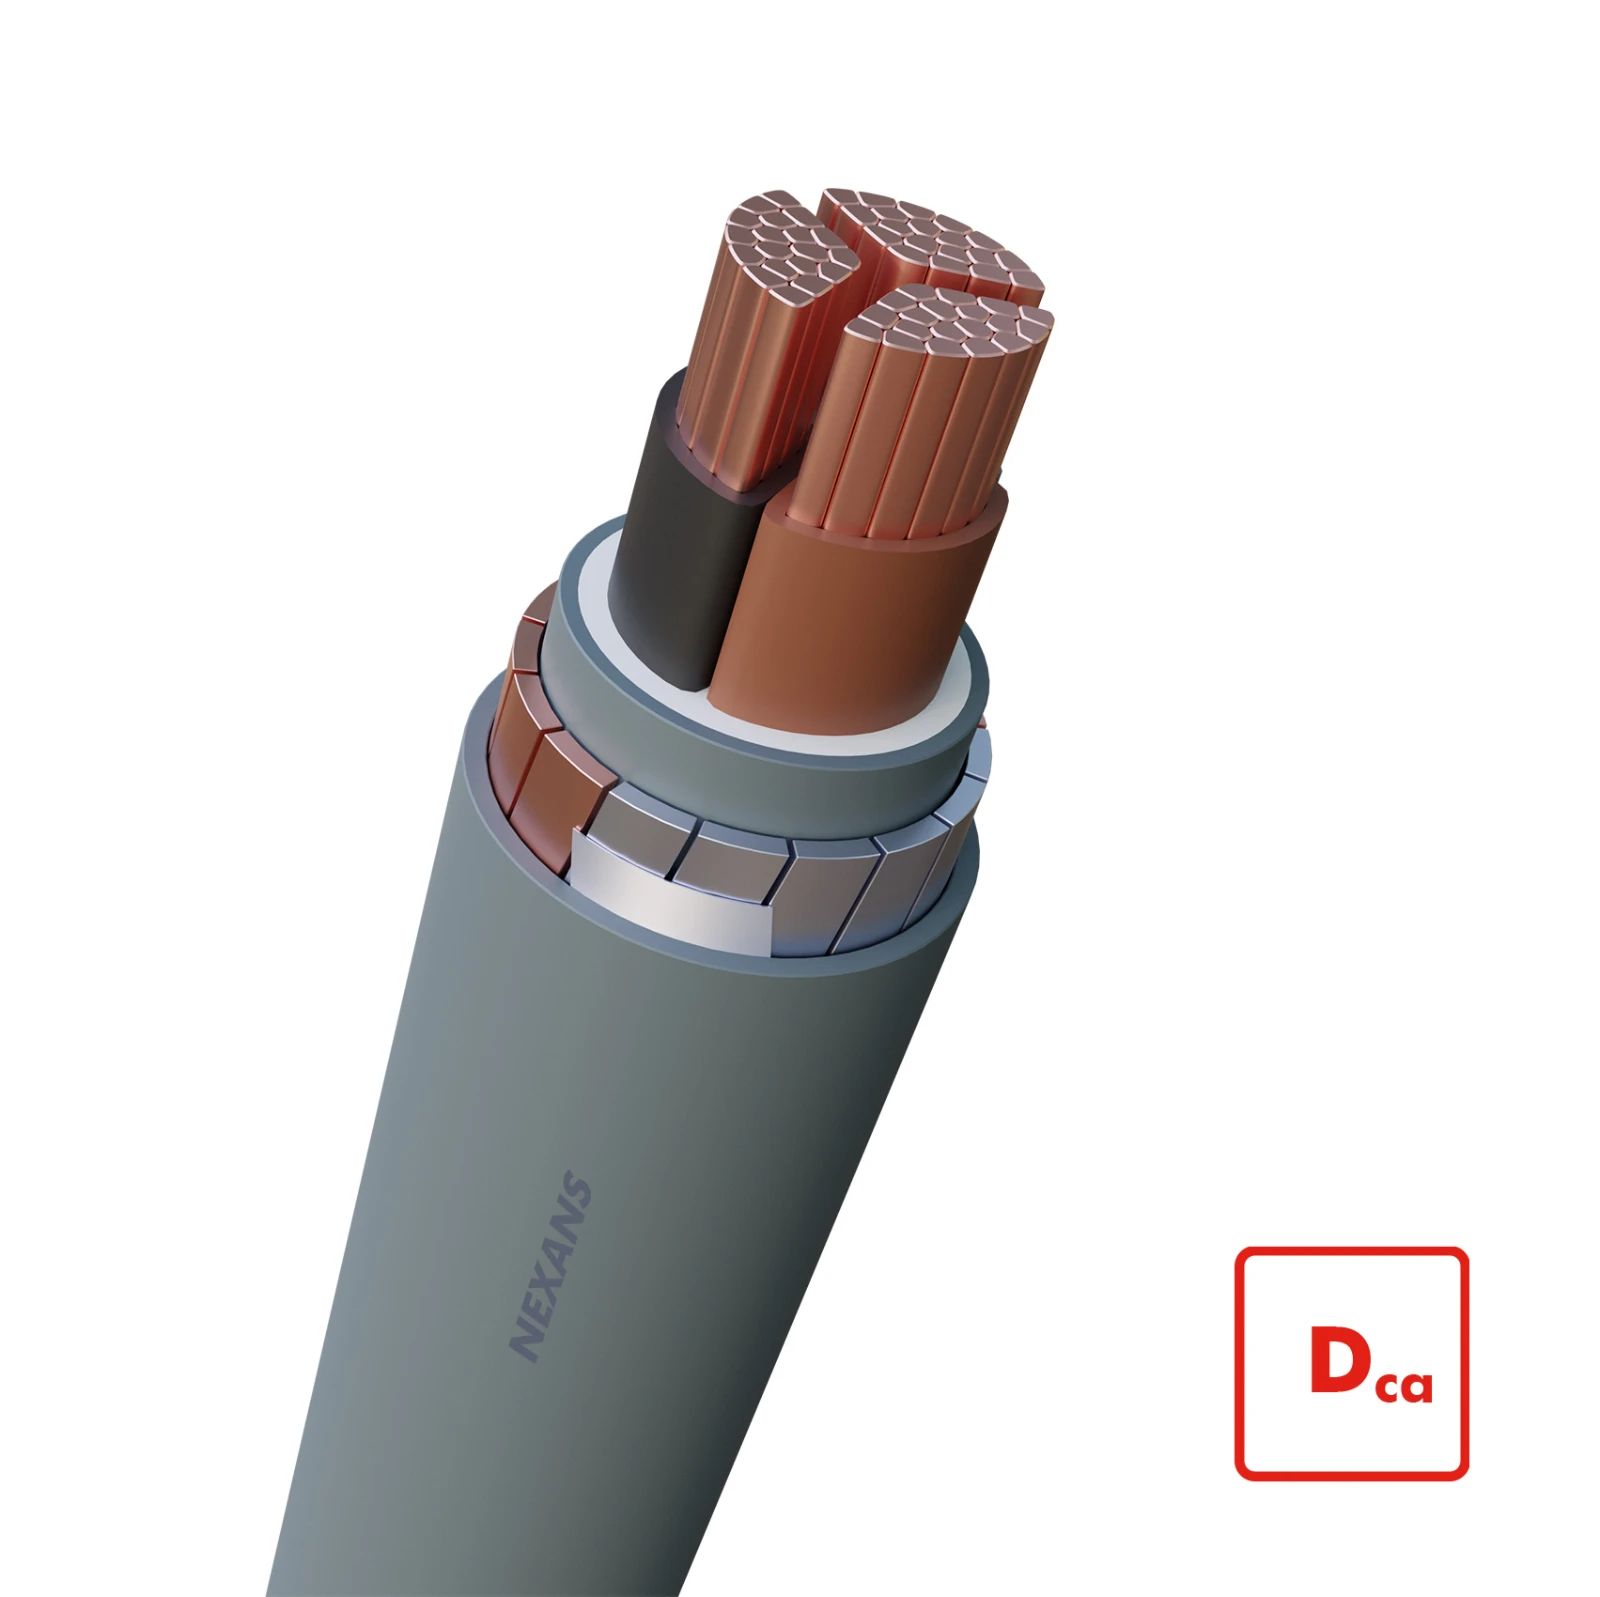 Nexans Voedingskabel >= 1 kV, voor vaste aanleg VG-YMvKas Dca-s2 Flex